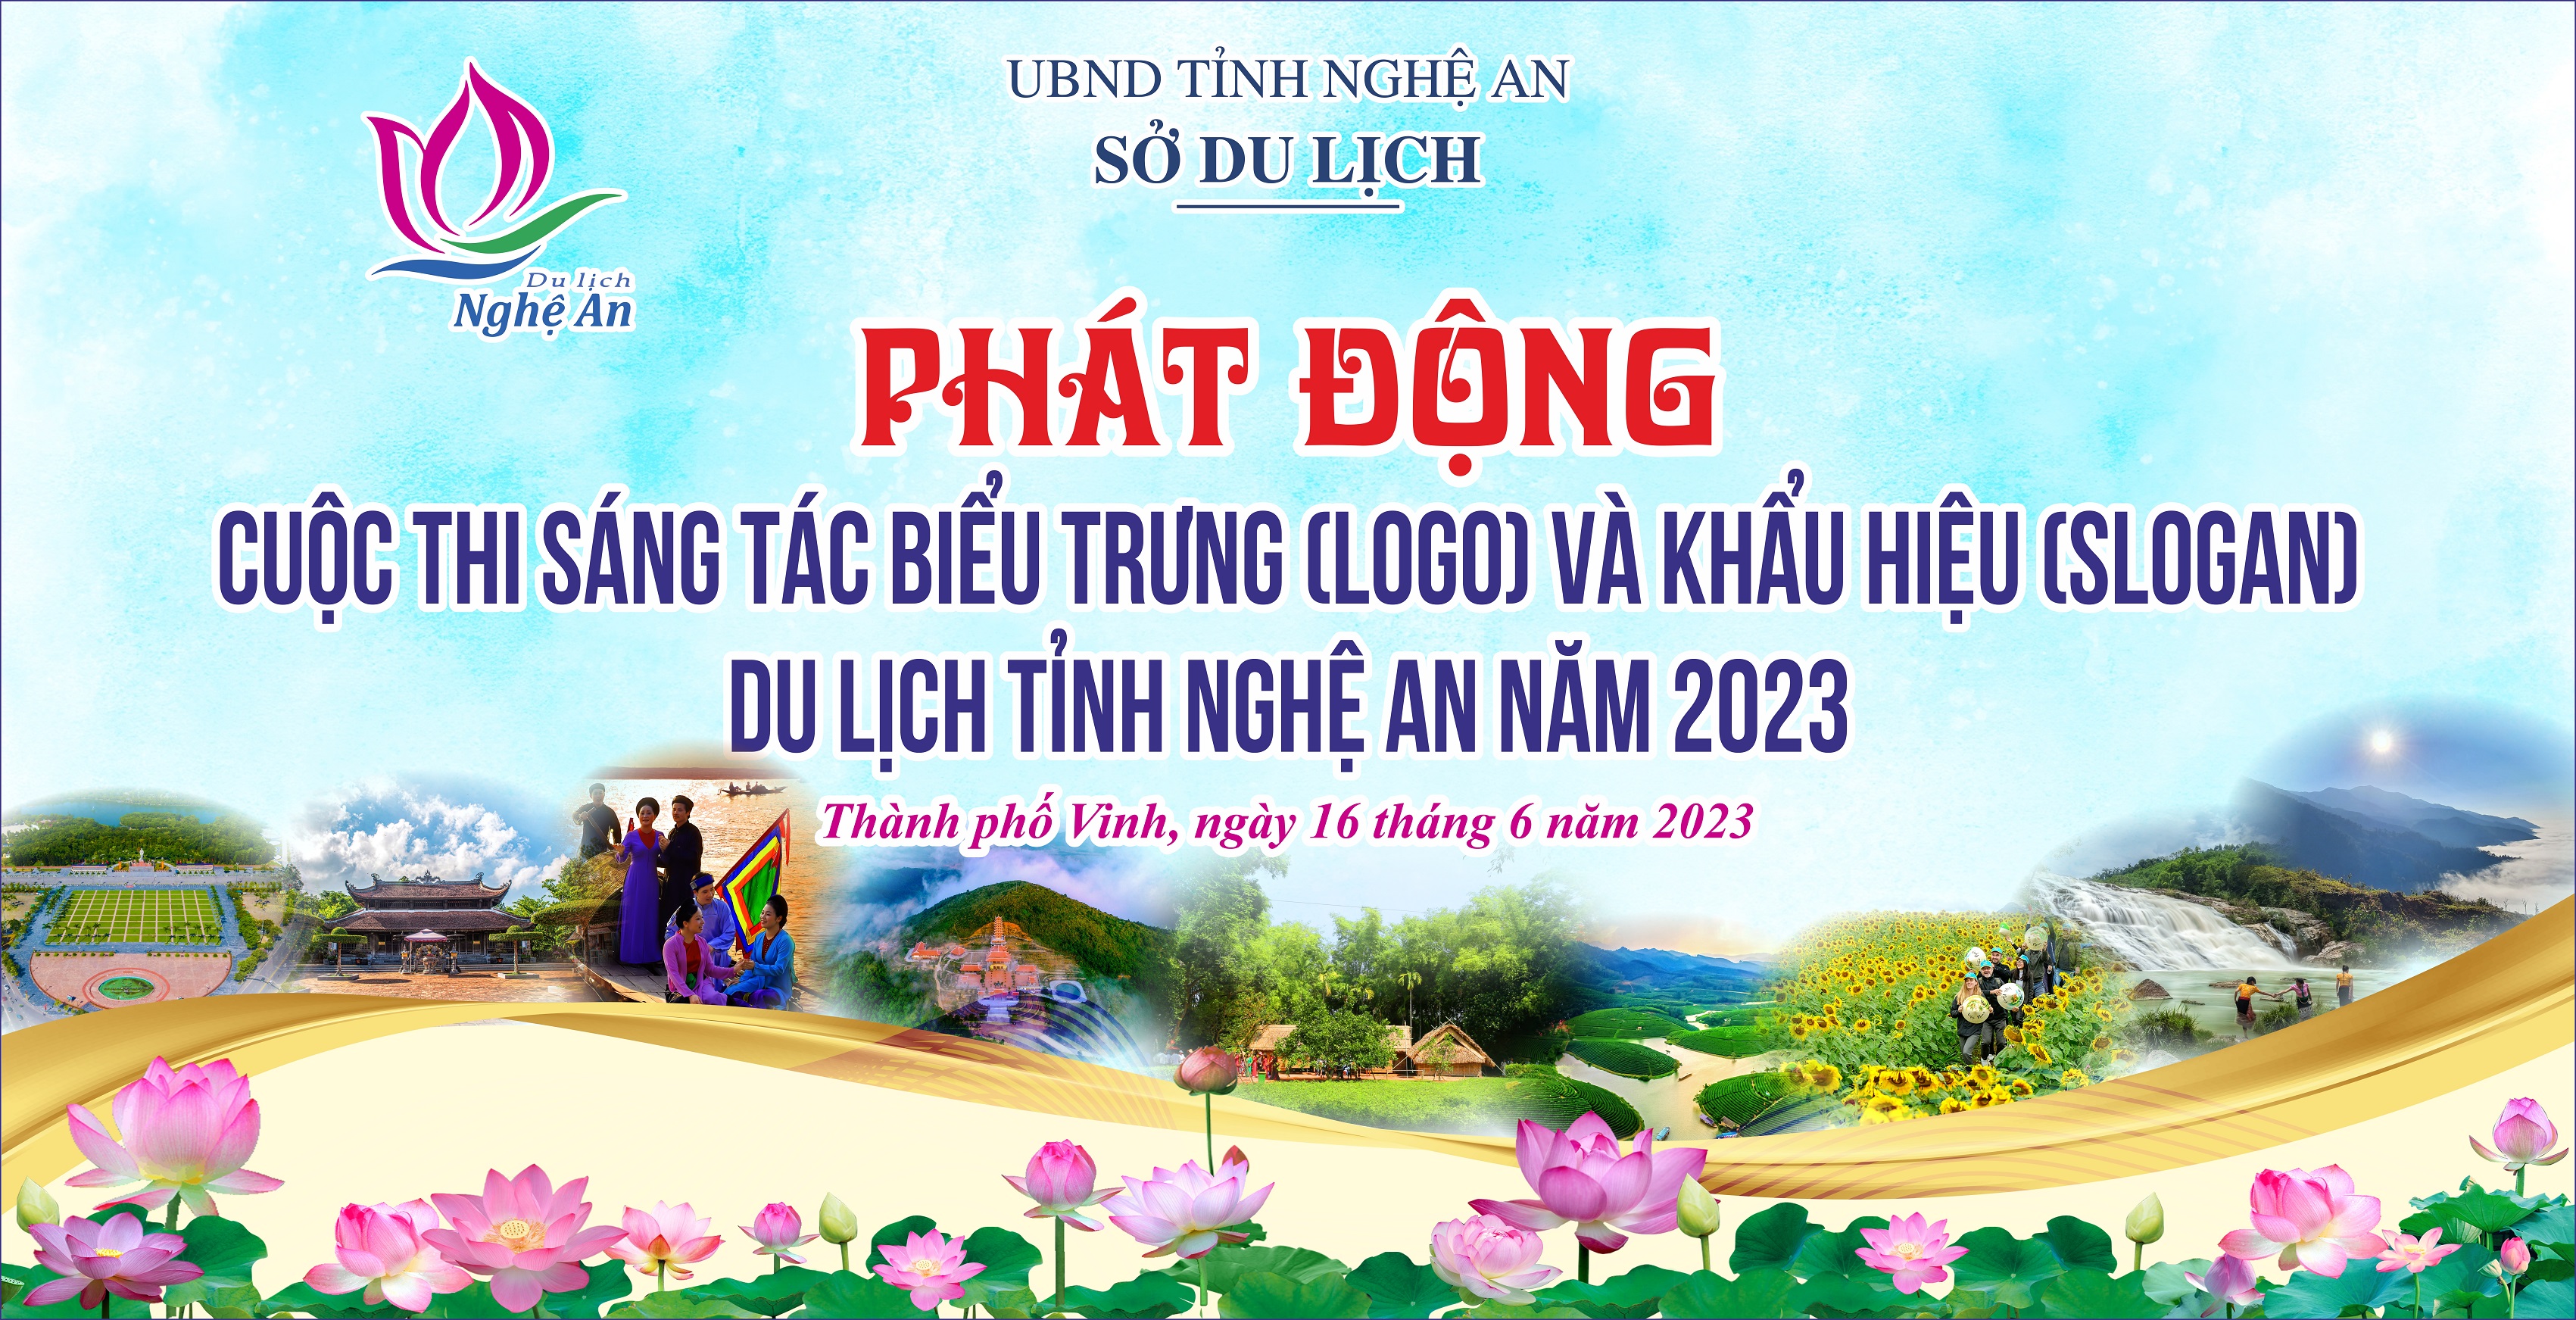 Cuộc thi sáng tác biểu trưng và khẩu hiệu du lịch tỉnh Nghệ An năm 2023